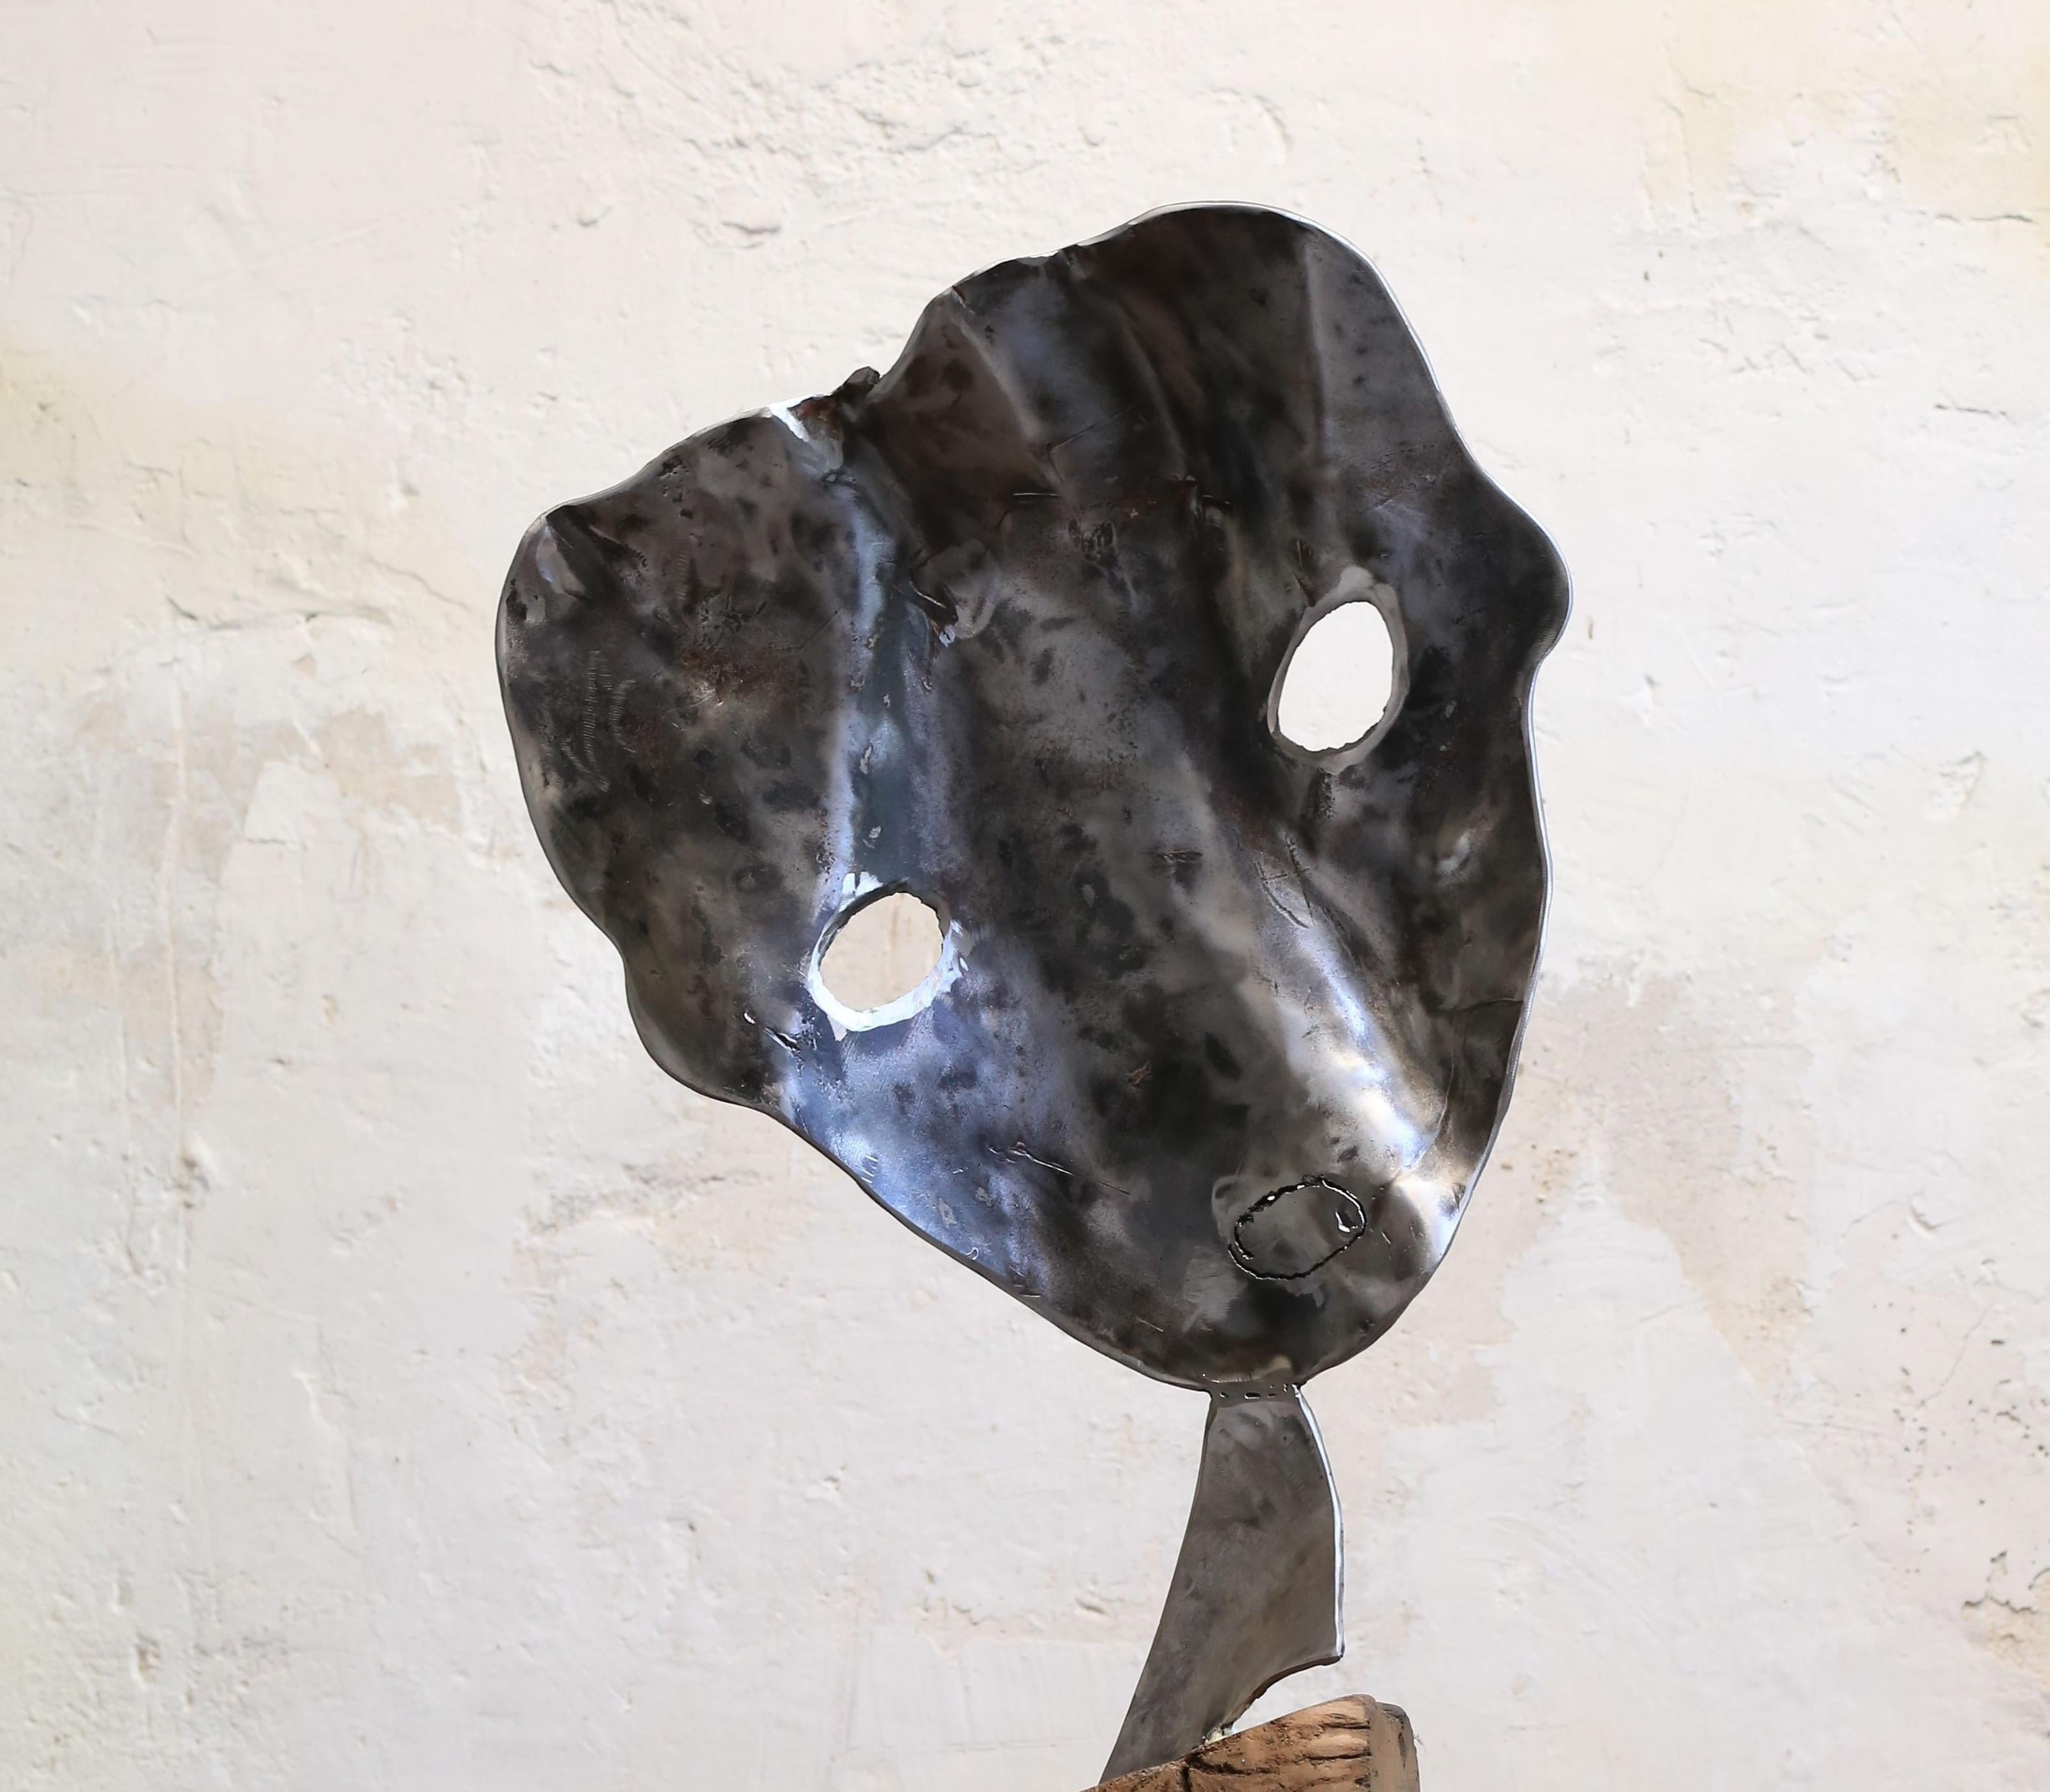 Un sentiment doux - Haude Bernab, 21e siècle, sculpture métallique contemporaine - Sculpture de Haude Bernabé